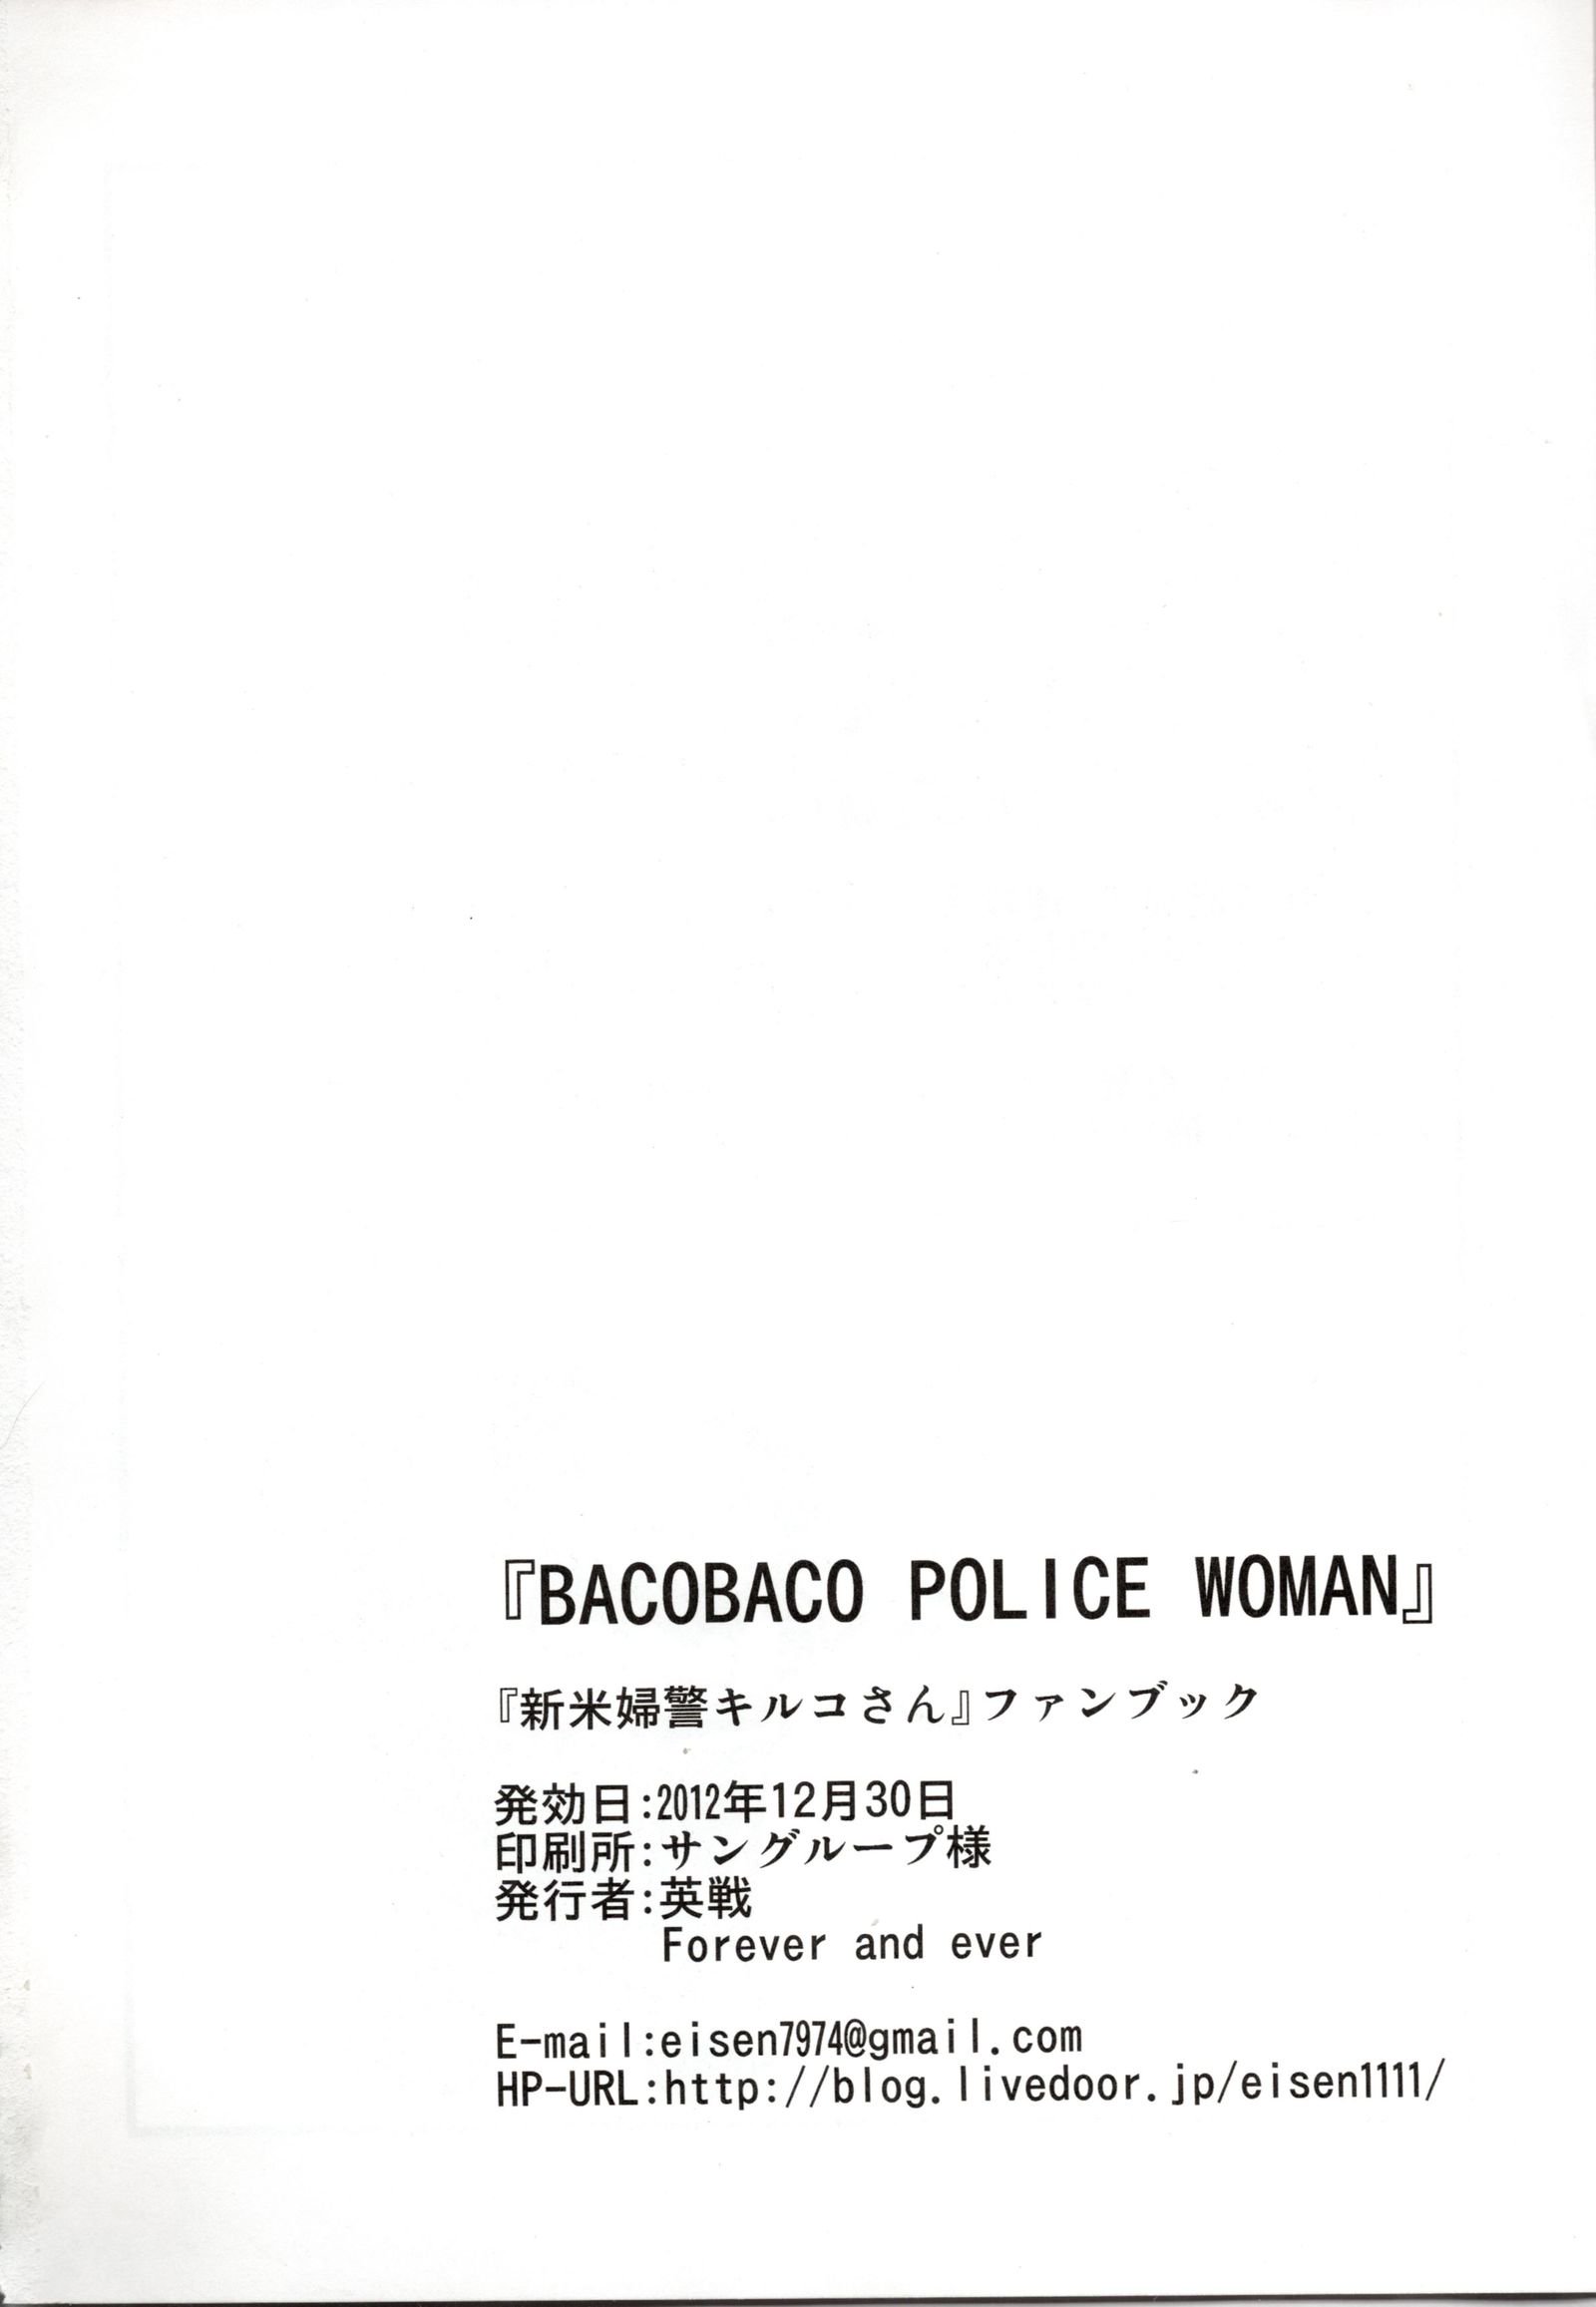 バコバコ警察の女性